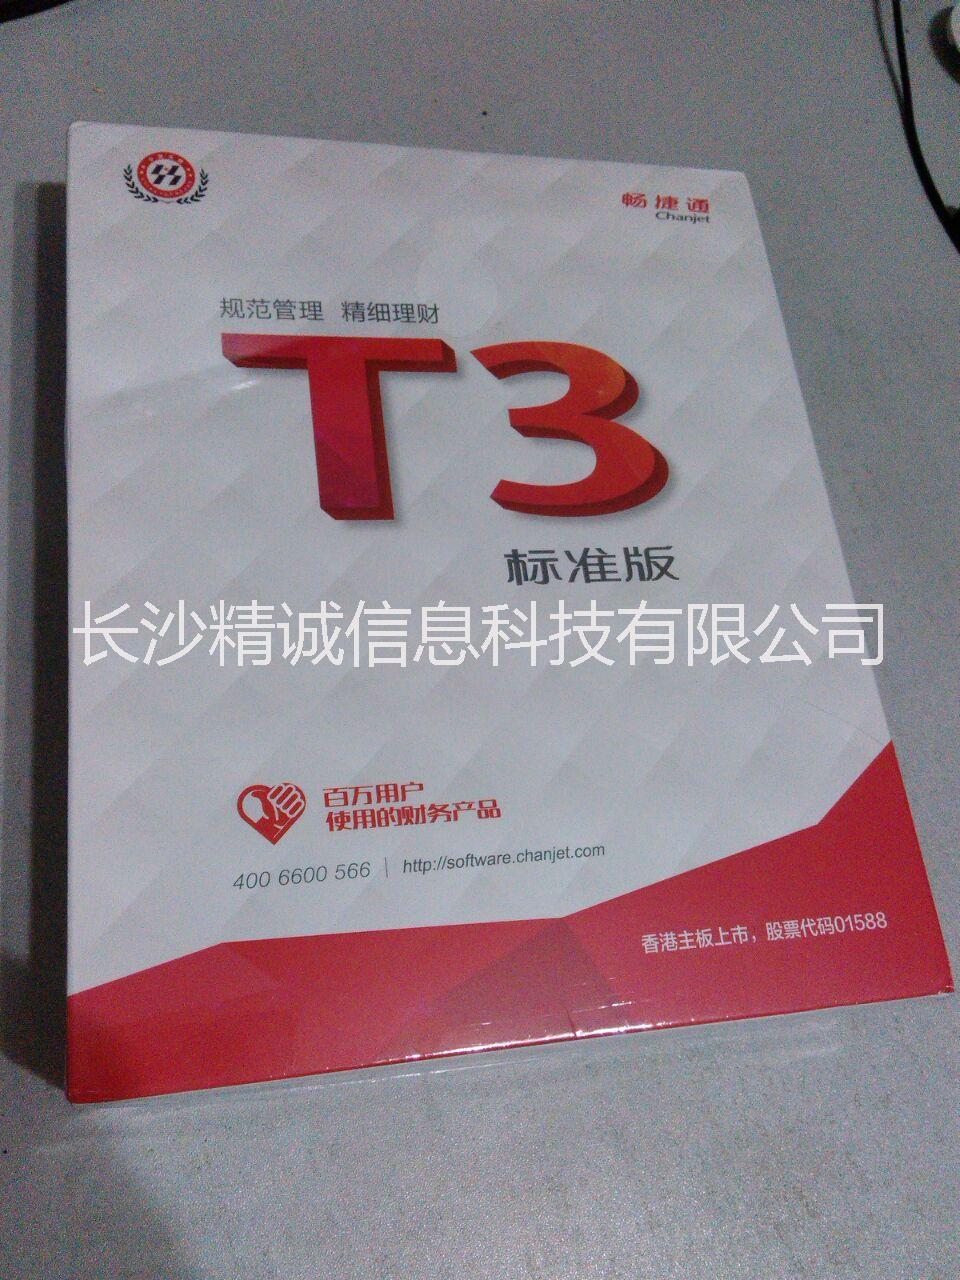 供应用友T3财务通标准版11.0批发